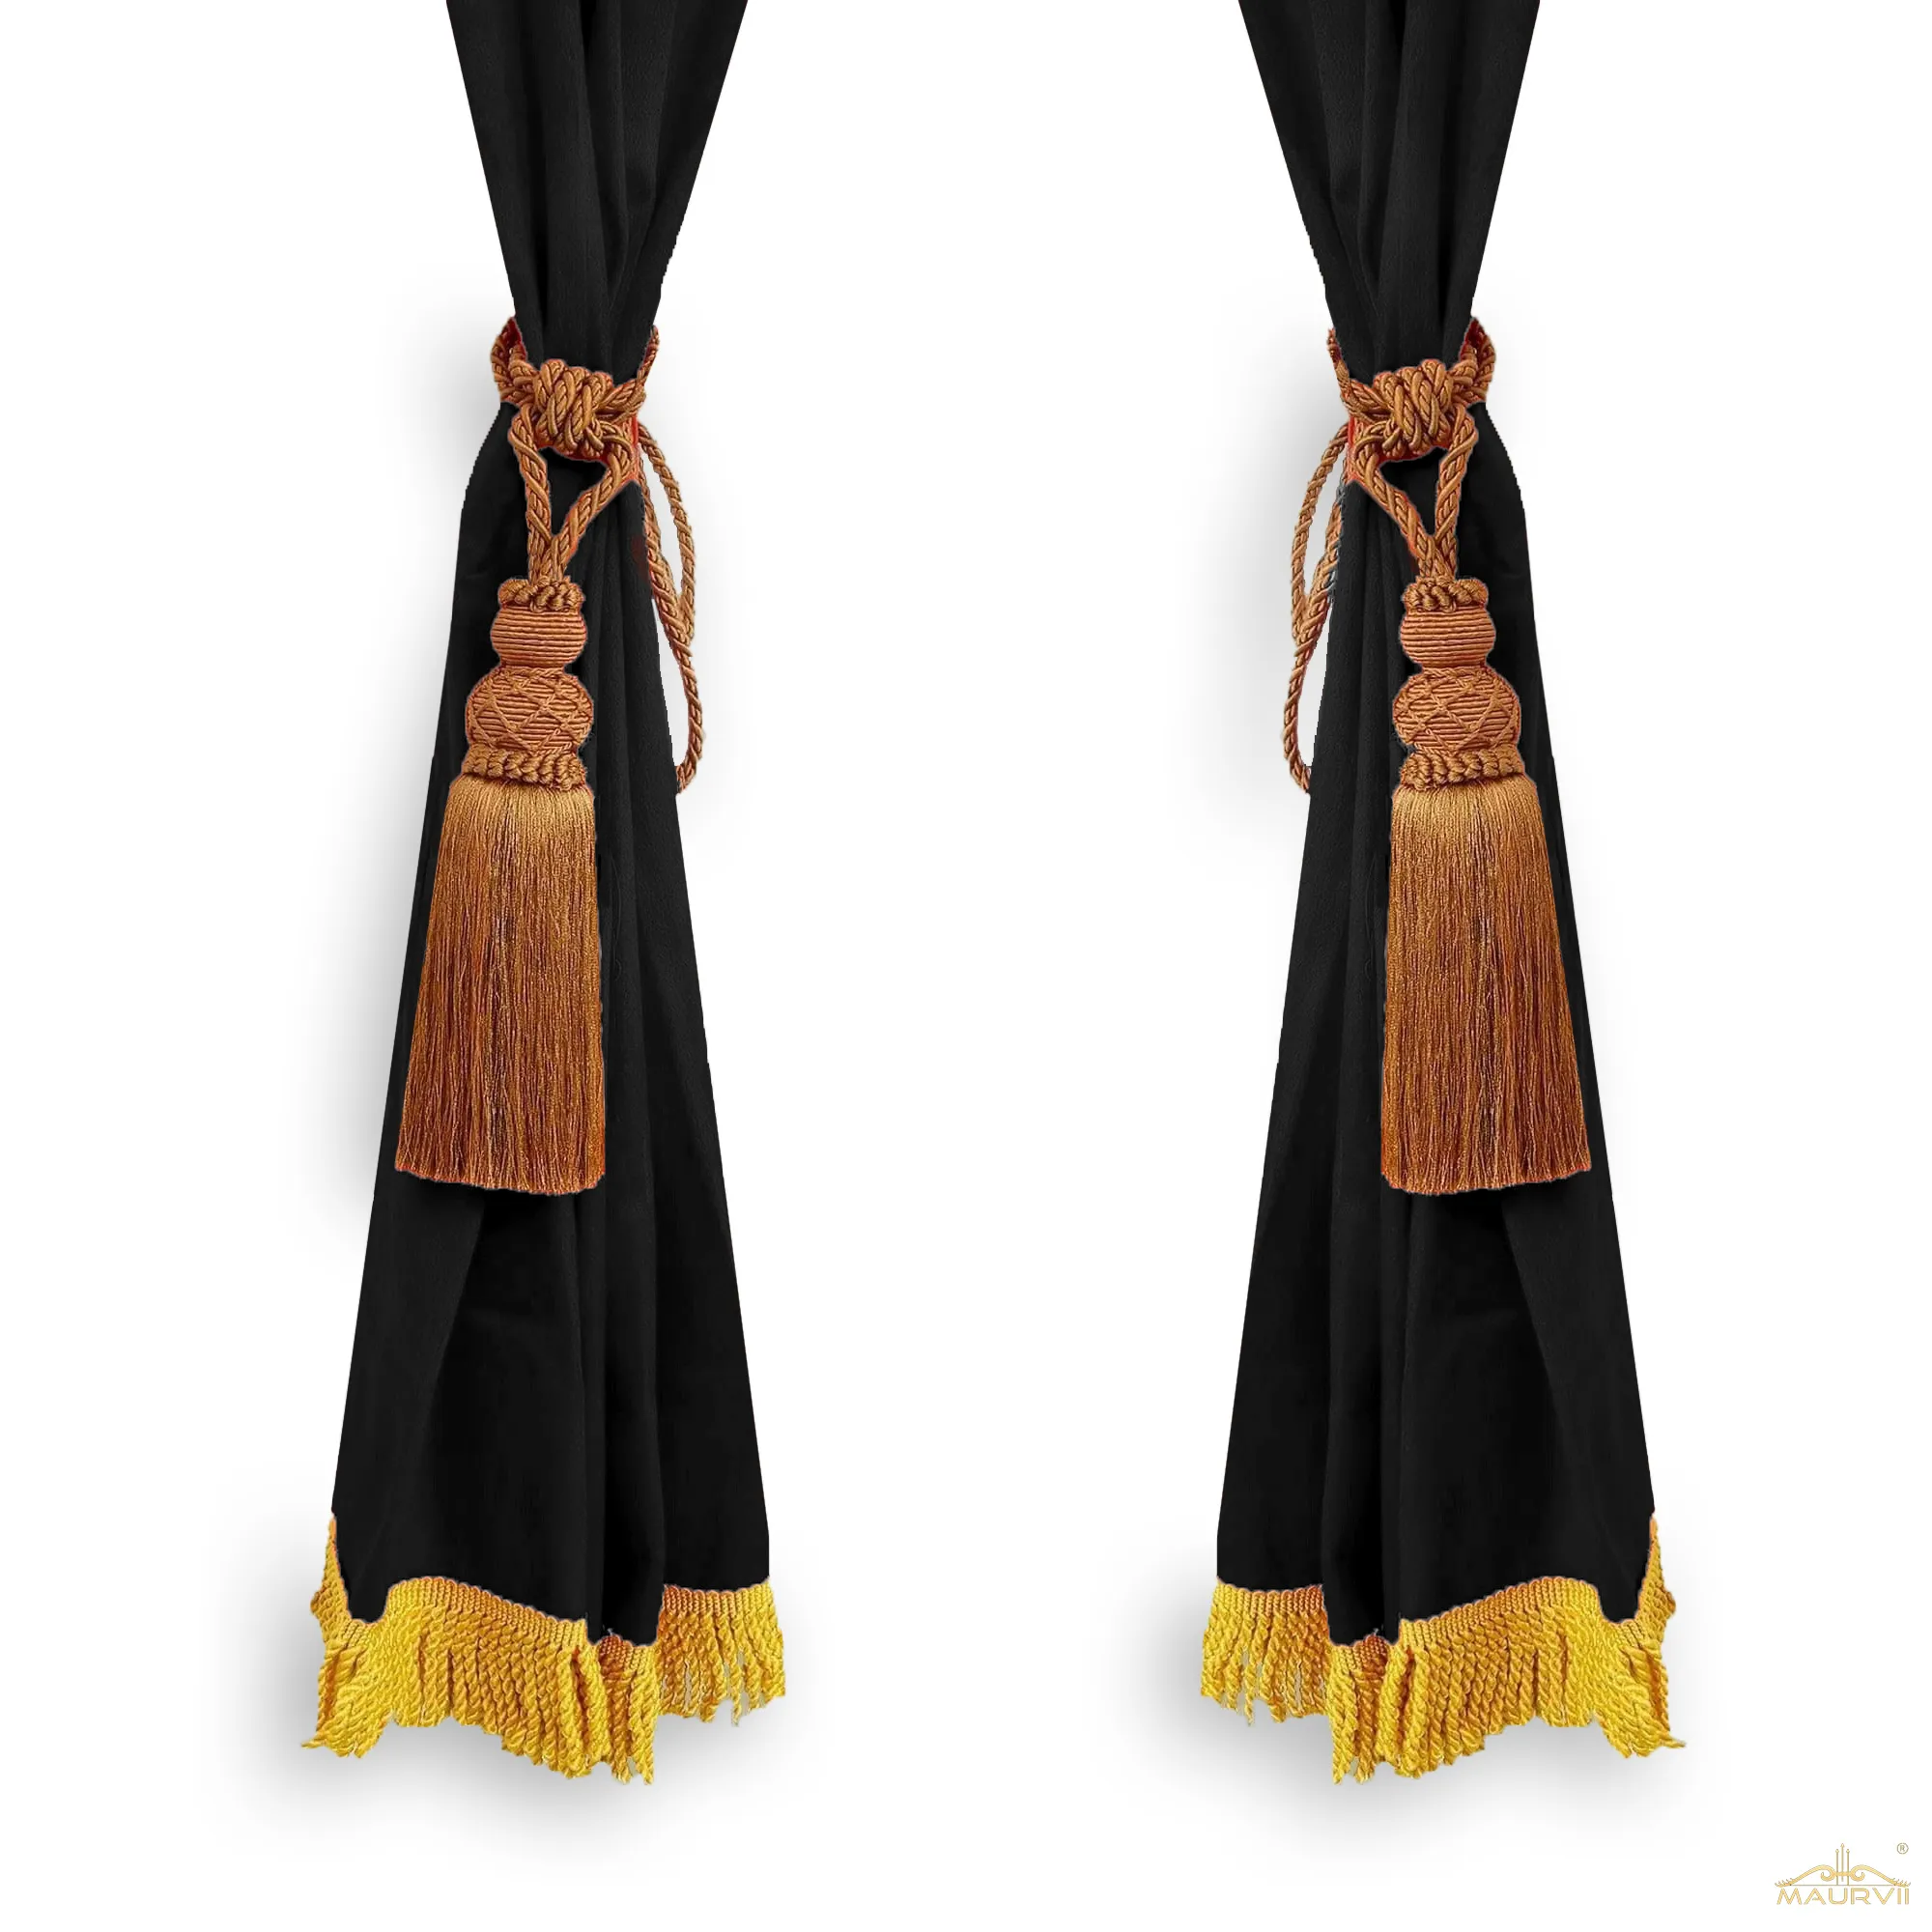 Black velvet curtains with fringe